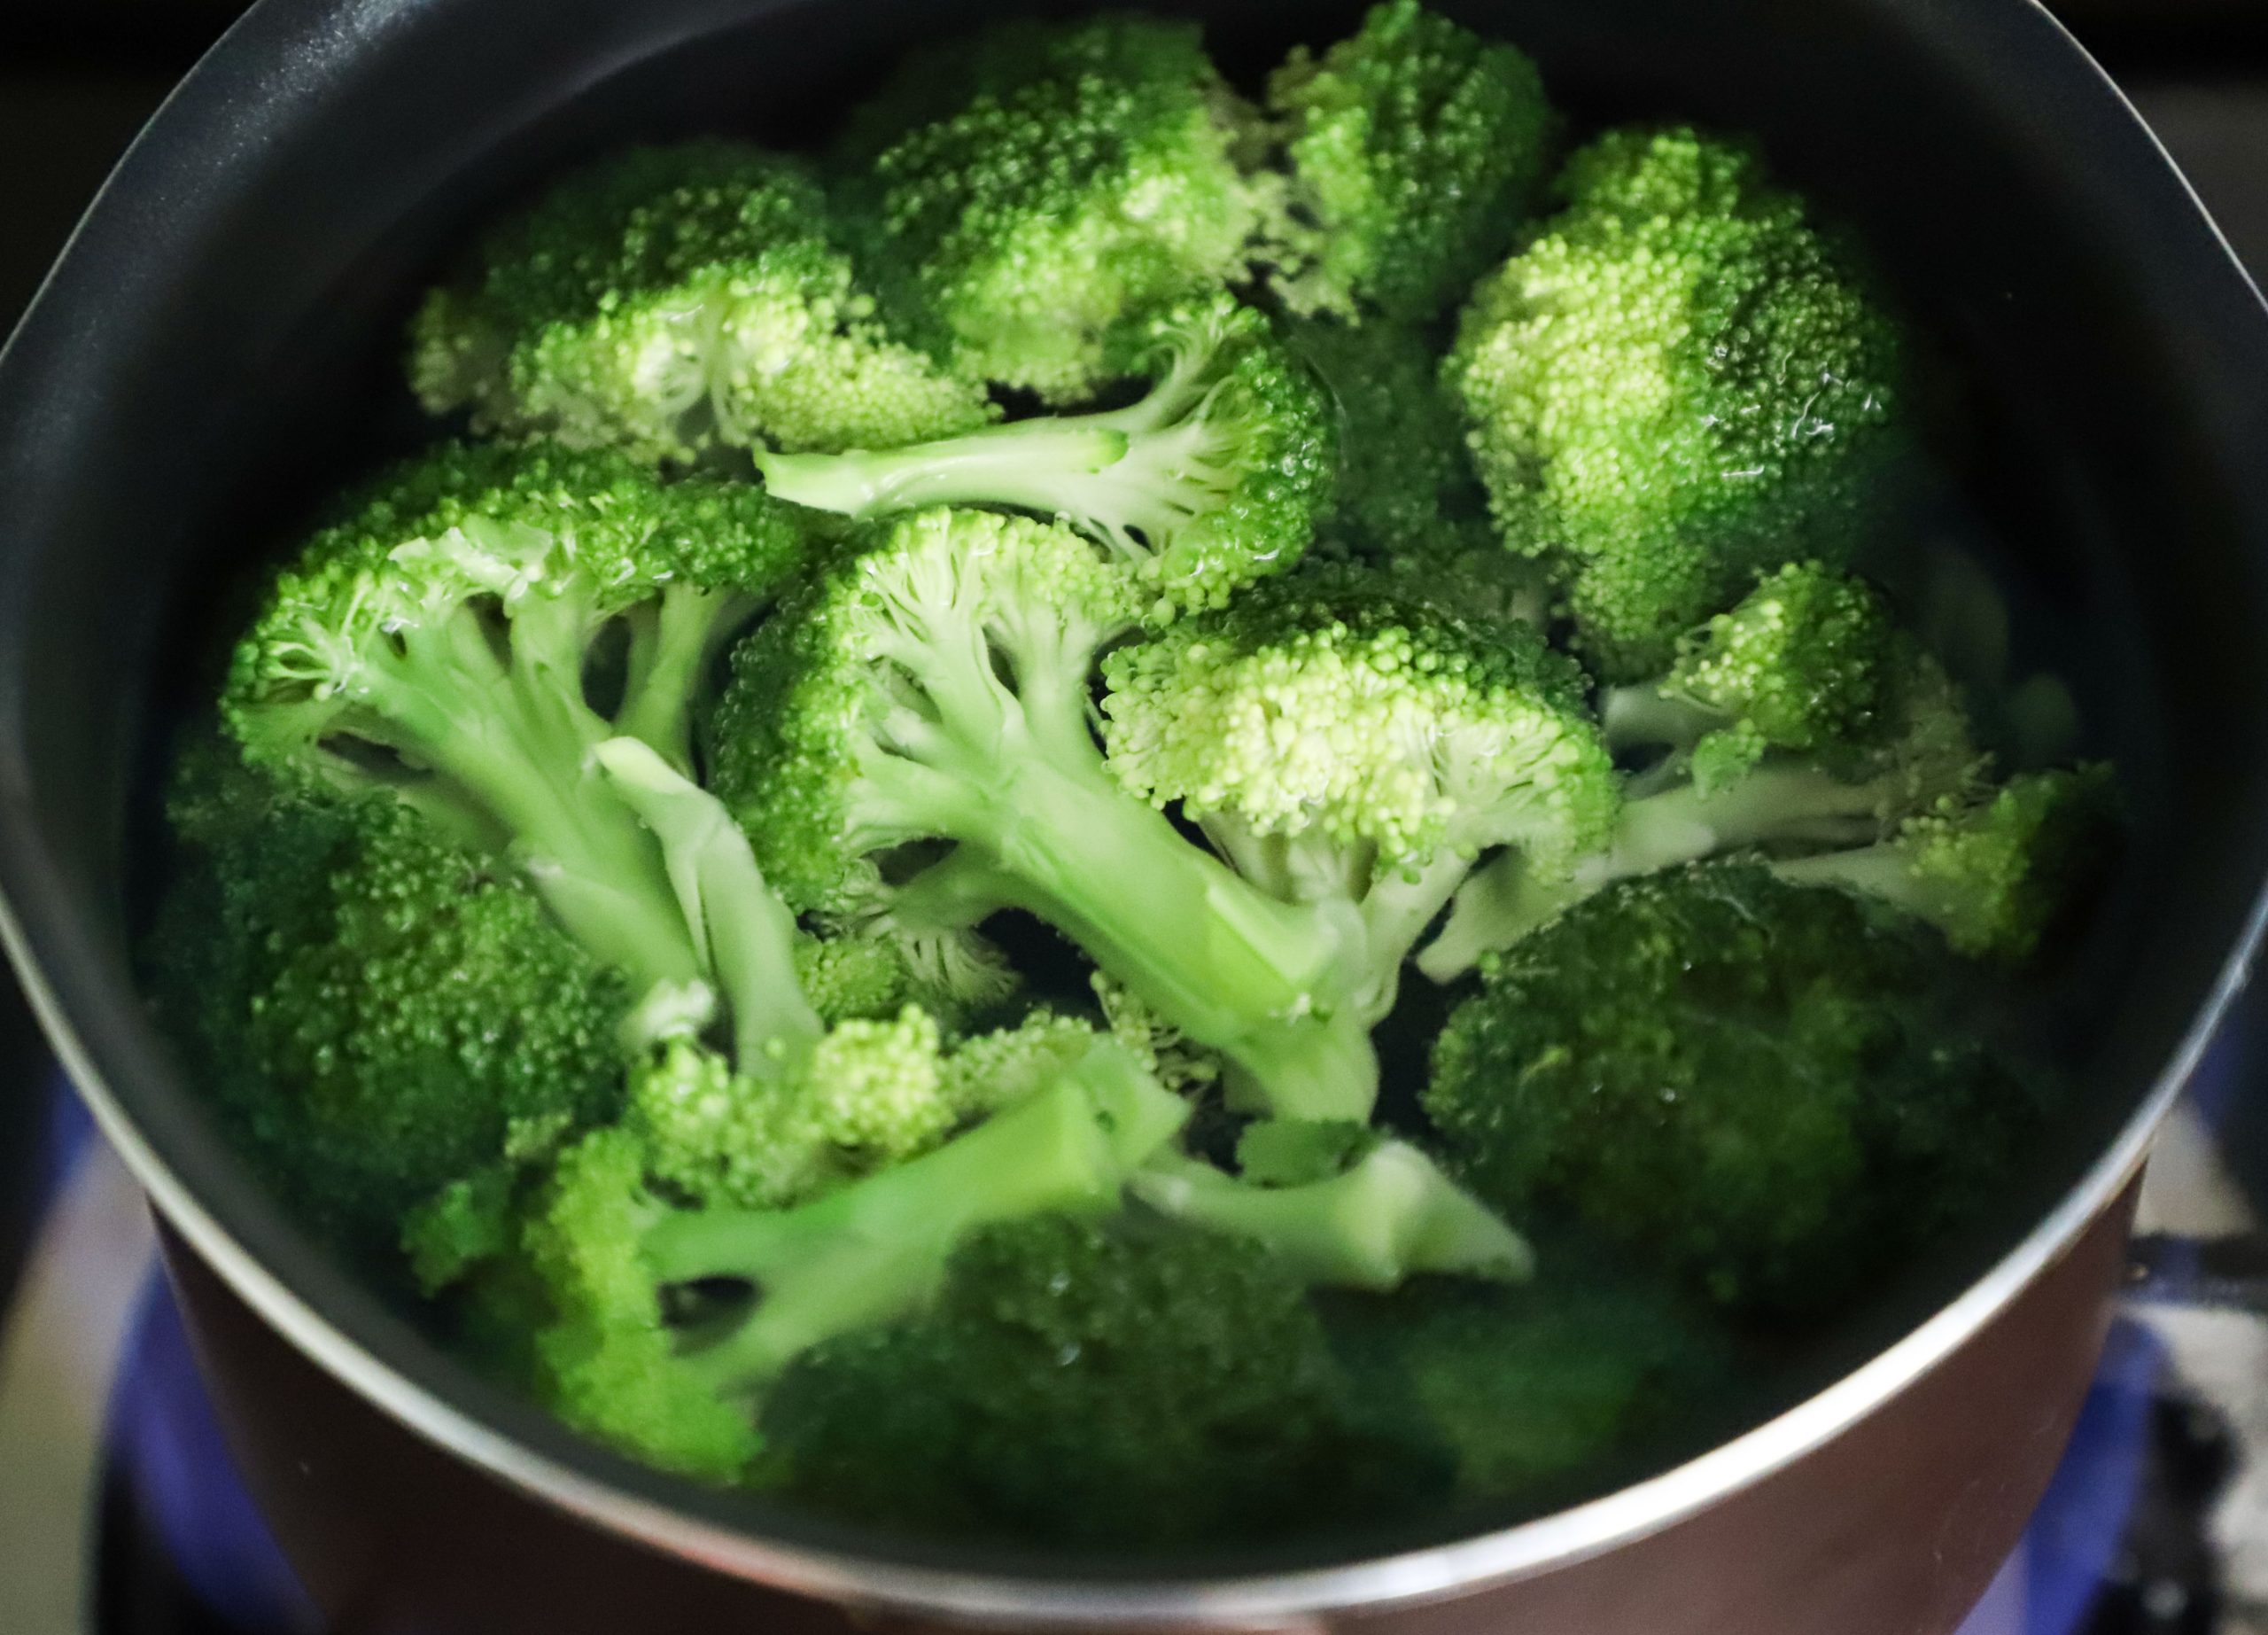 Cum trebuie gătit, de fapt, broccoli. Secretul lui Florin Dumitrescu pe care orice gospodină trebuie să îl știe